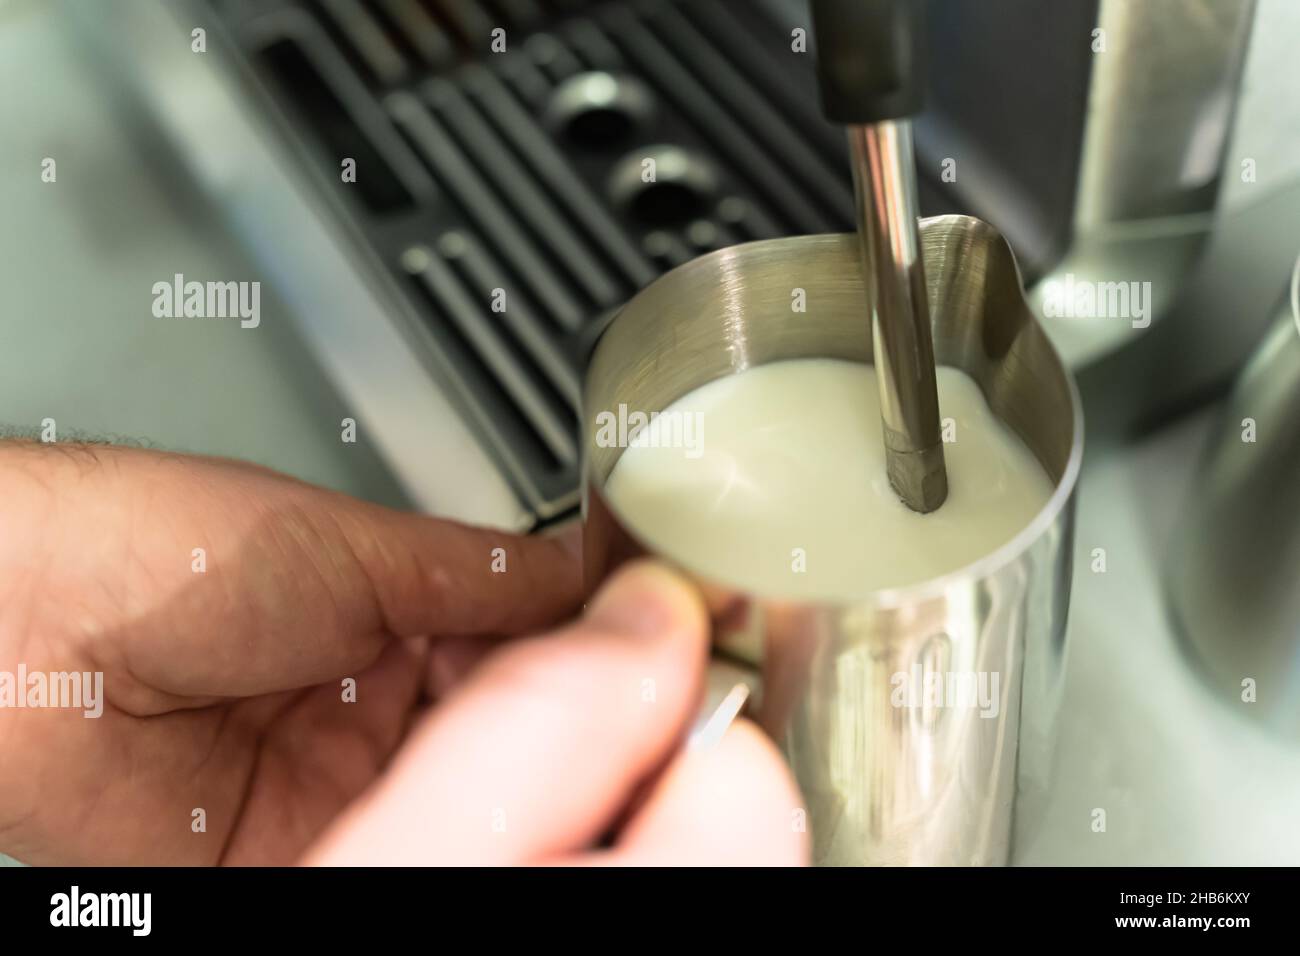 Ein Mann schäumt Milch für einen Cappuccino in einem Krug auf. Stockfoto